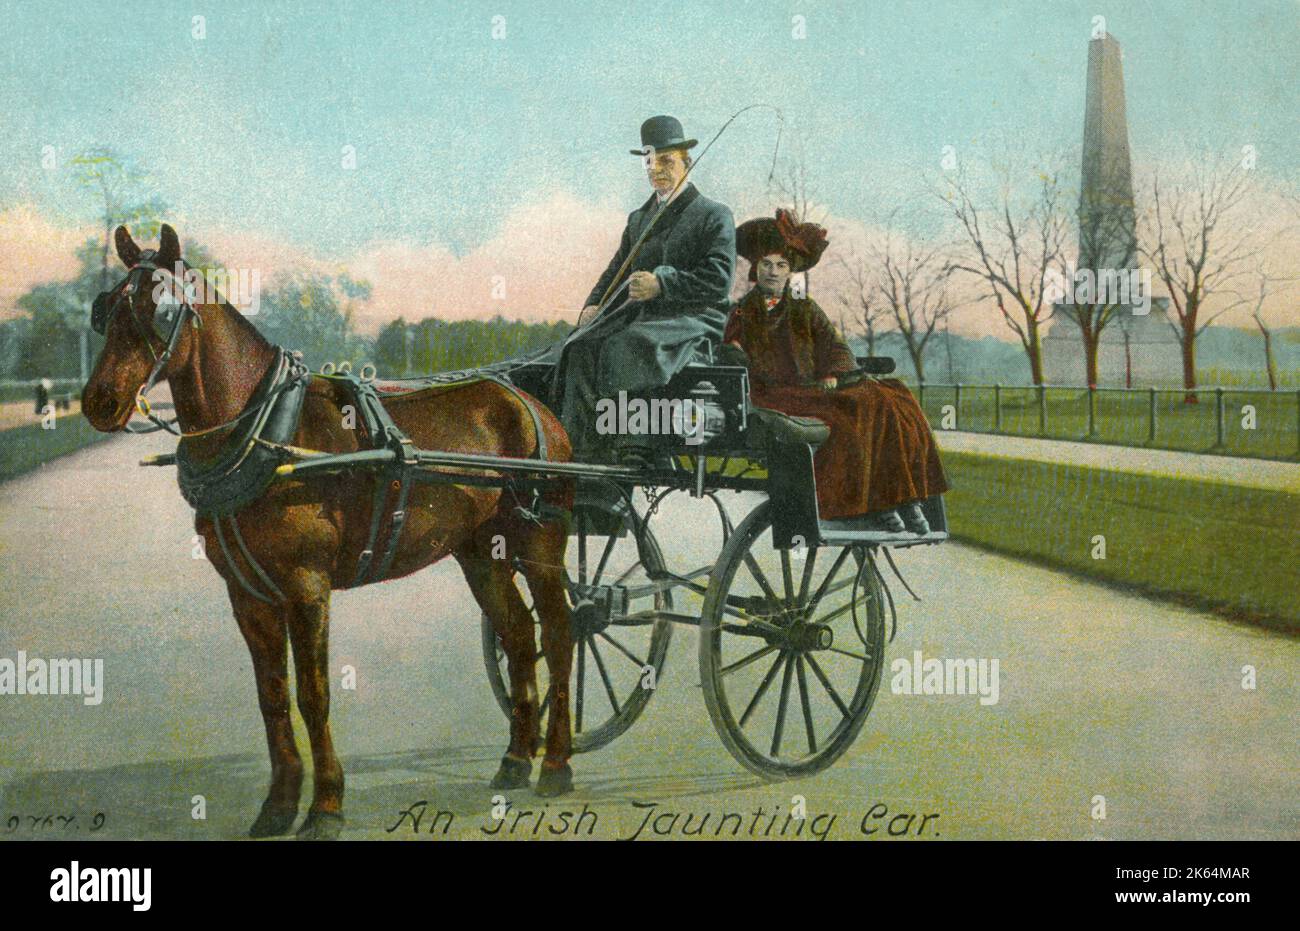 Ein irisches Jaunting Car in Phoenix Park, Dublin, Irland. Als leichte zweirädrige Kutsche für ein einzelnes Pferd, mit einem Sitz vor dem Fahrer, war das jaunting car ein beliebtes Transportmittel im 19.. Jahrhundert in Dublin, das von Valentine Vousden in einem Lied mit diesem Namen populär wurde. Datum: Ca. 1905 Stockfoto